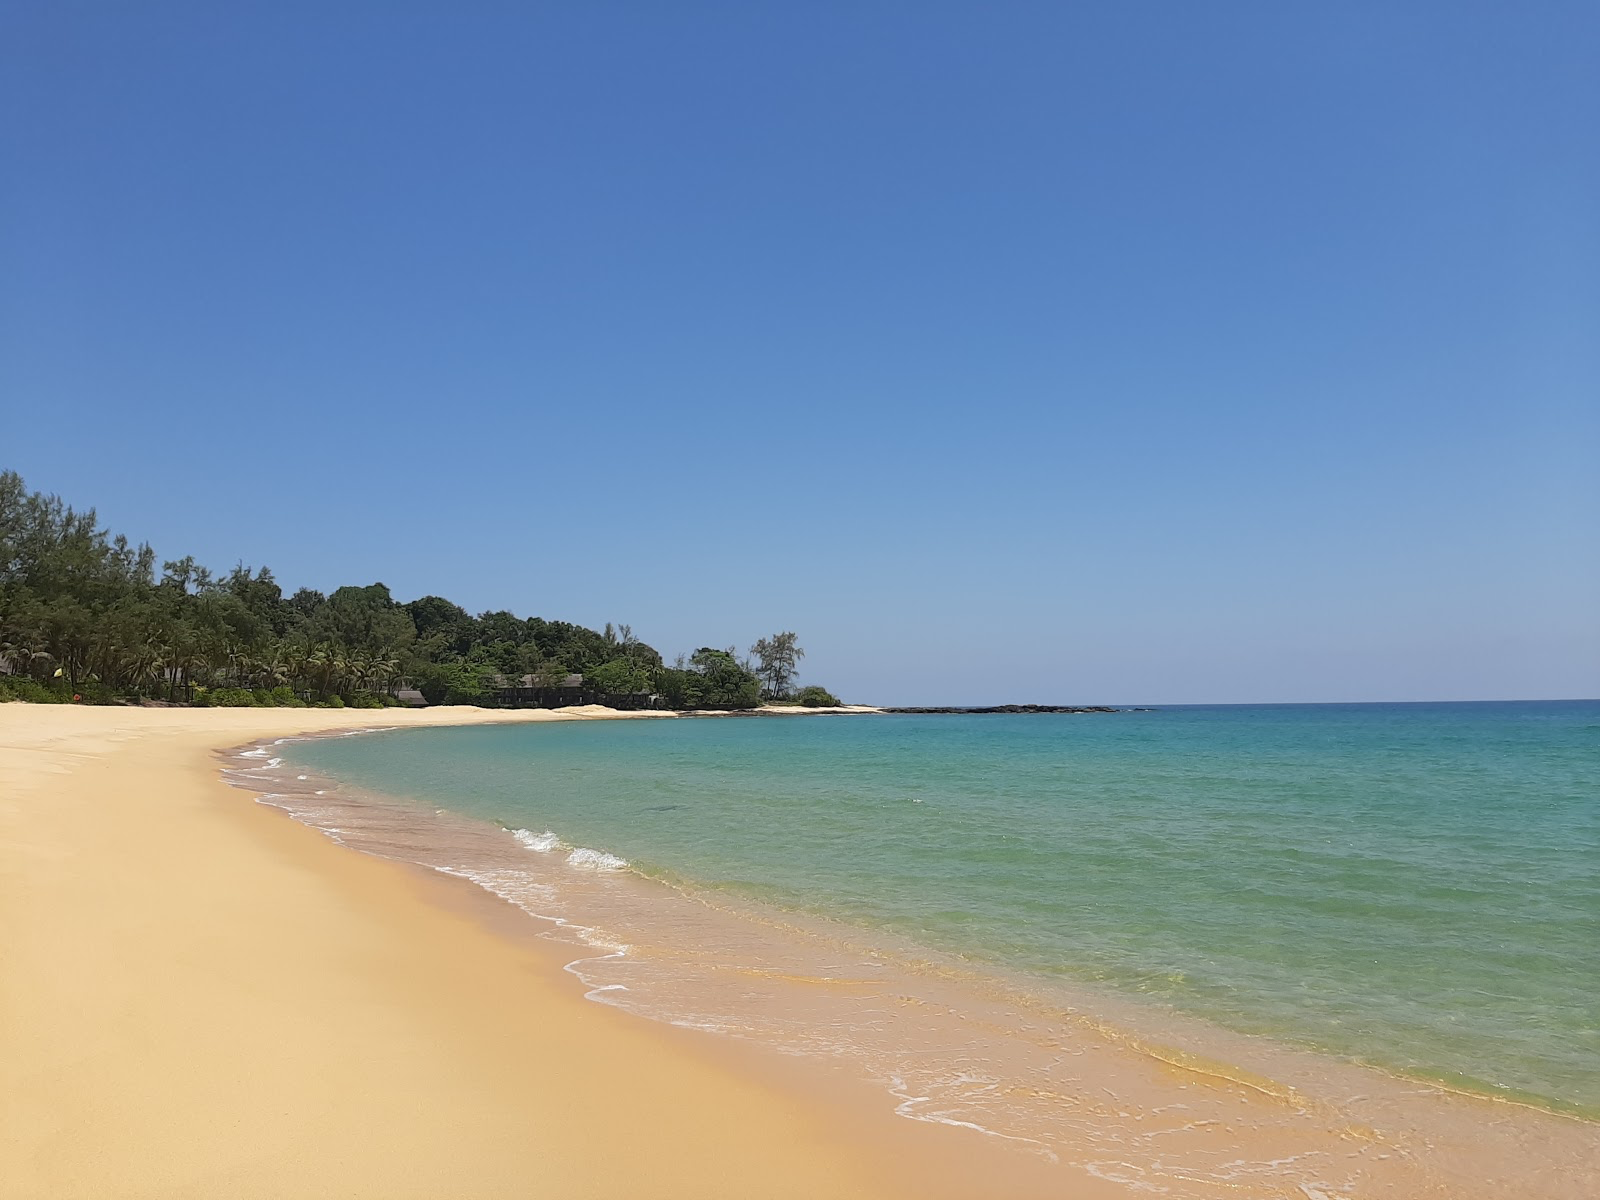 Beaches in Terengganu